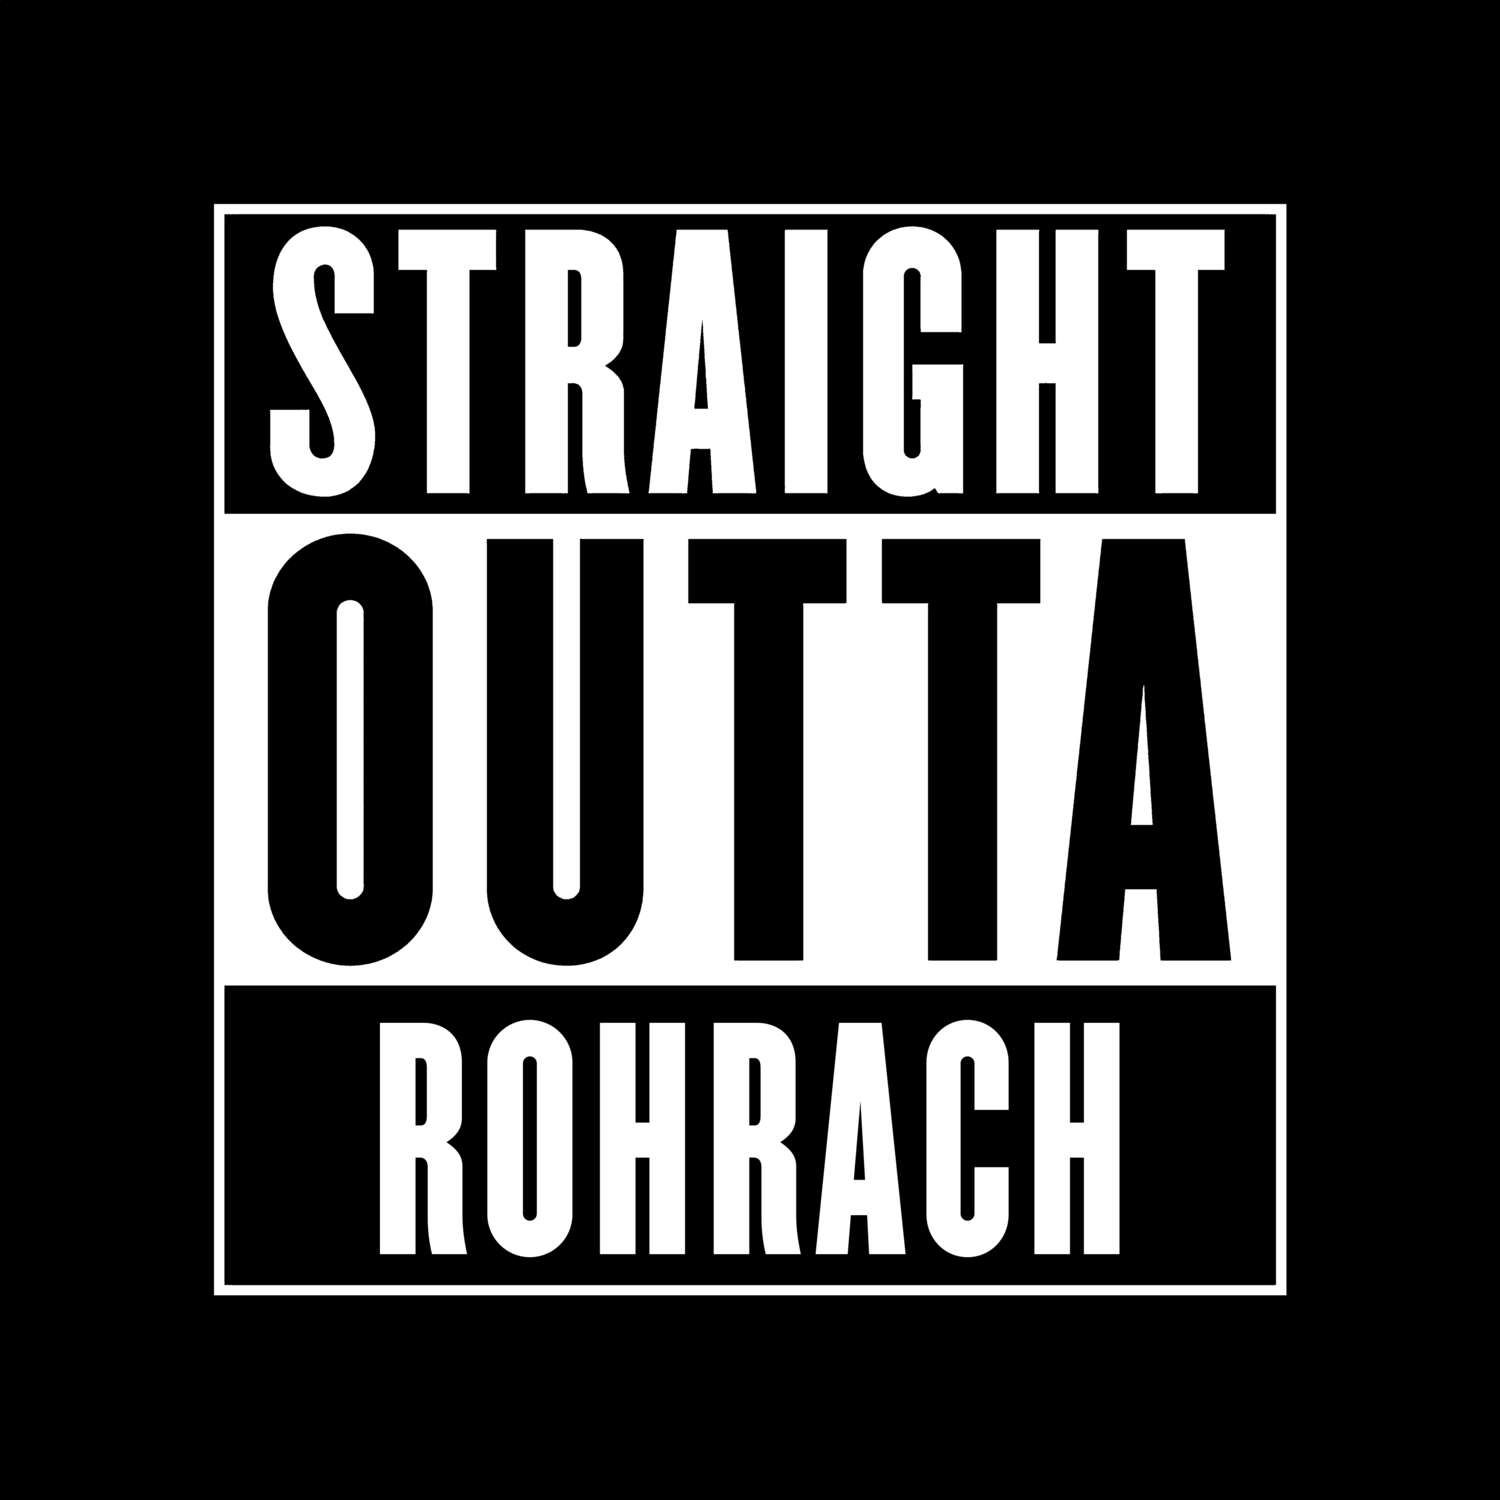 Rohrach T-Shirt »Straight Outta«